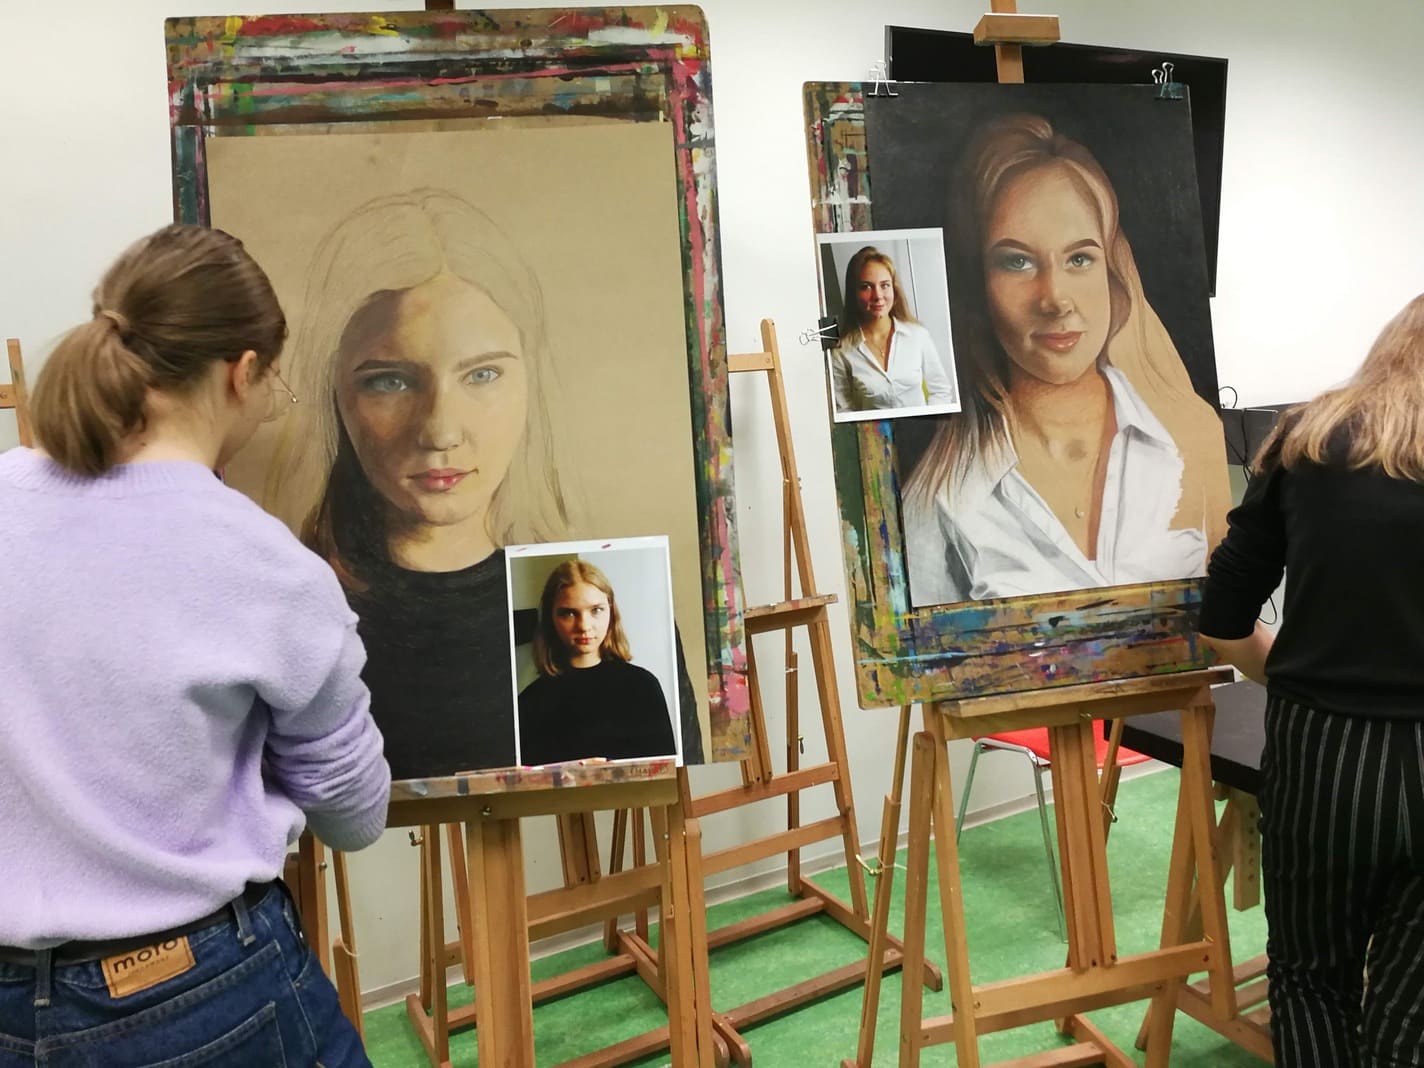 Fotol on kaks tüdrukut, kes joonistavad värvipliiatsitega hüperrealistlikke autoportreesid